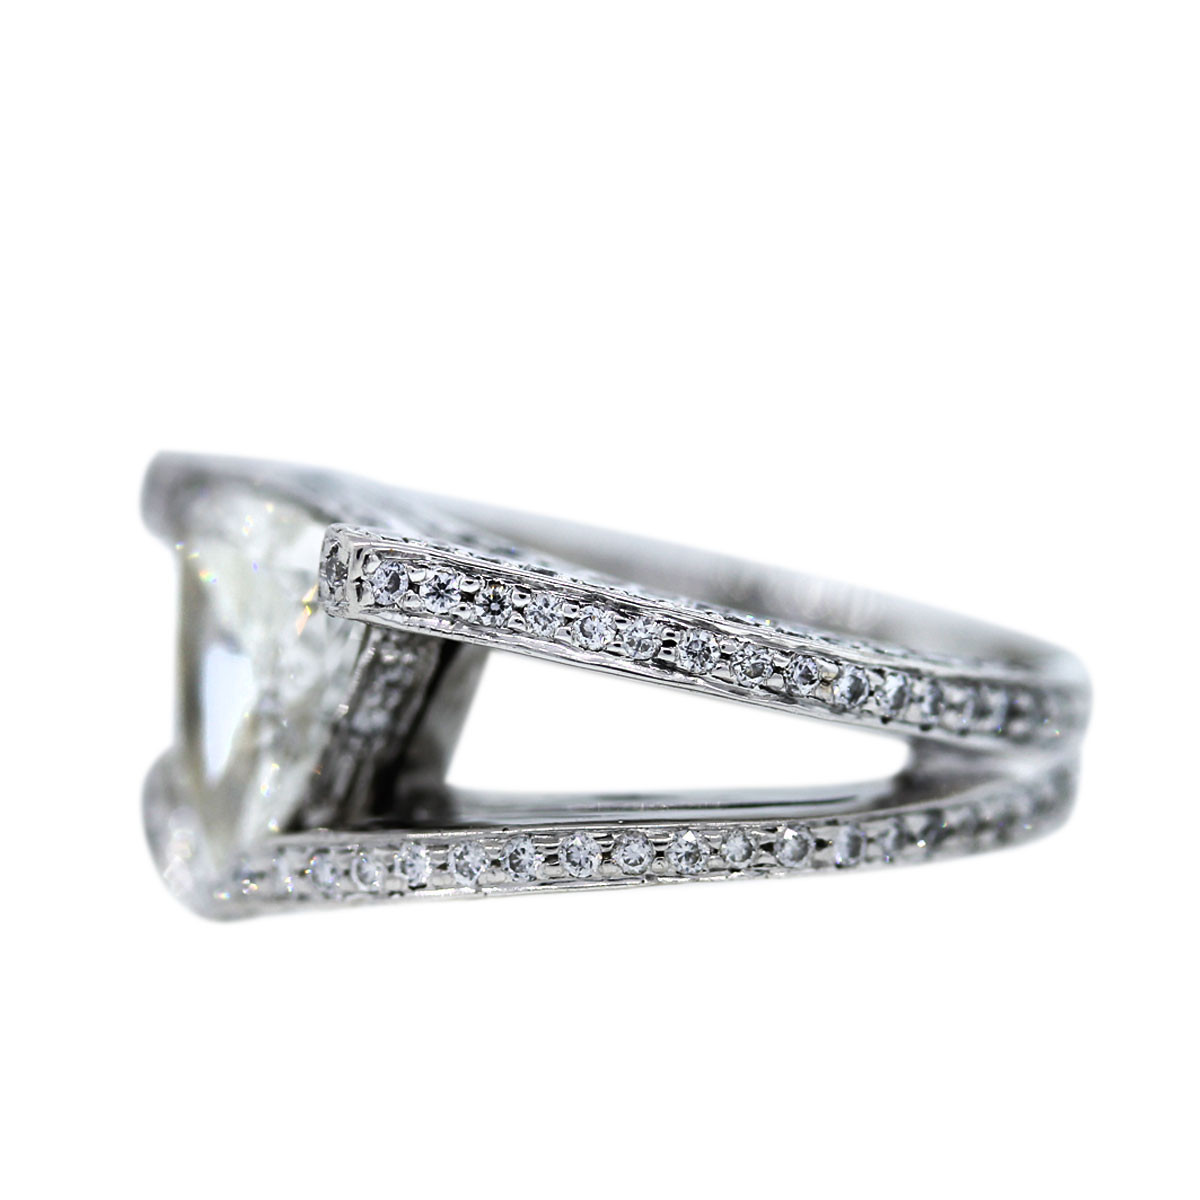 Trillion Diamond Engagement Ring
 Platinum 2 70 Carat Trillion Cut Diamond Engagement Ring